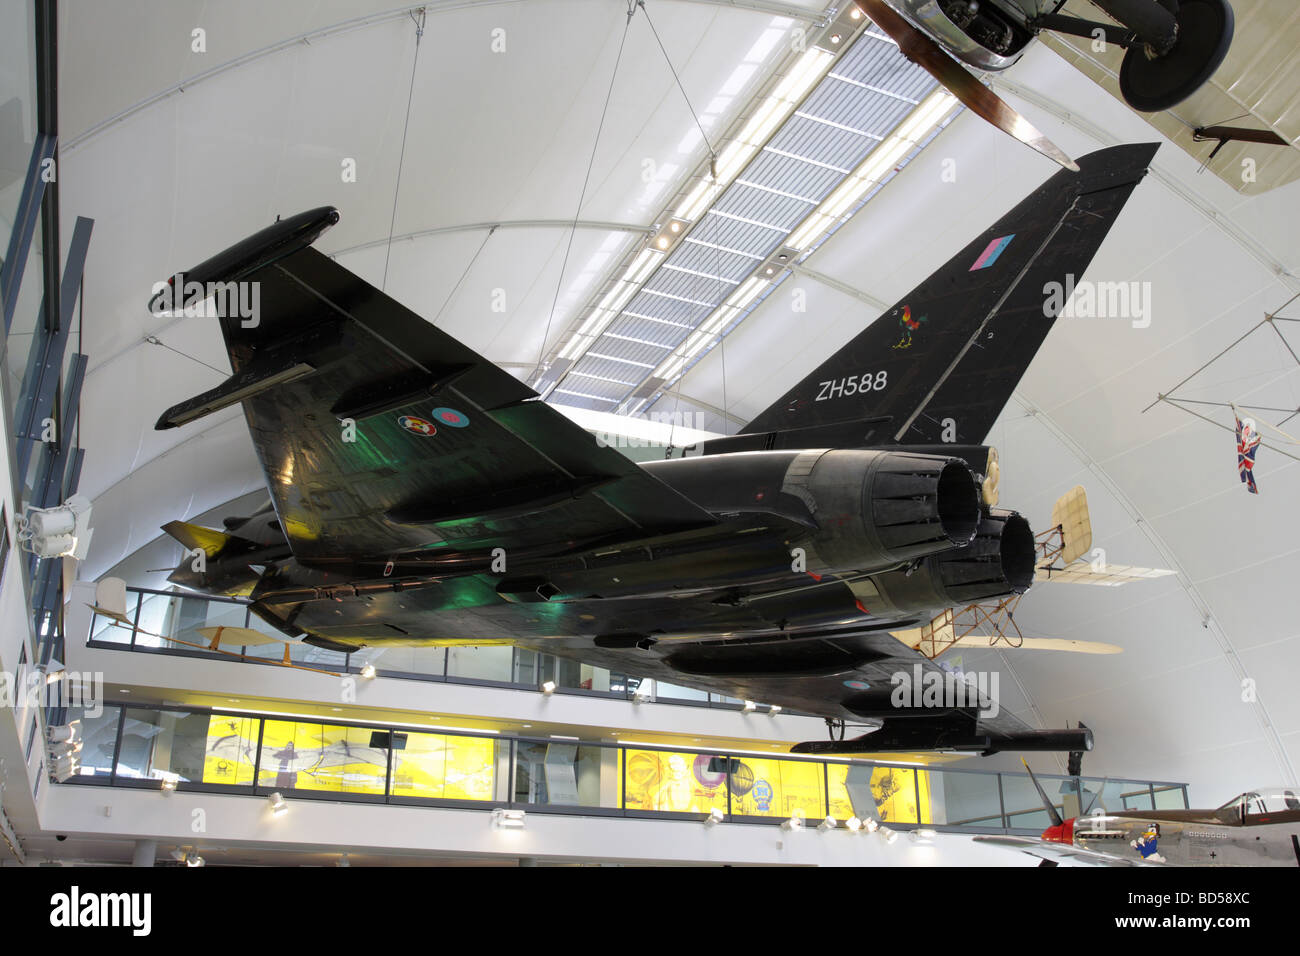 Eurofighter Typhoon-Prototyp derzeit auf dem Display an der Meilensteine  der Flug Ausstellungshalle RAF Hendon, London Stockfotografie - Alamy